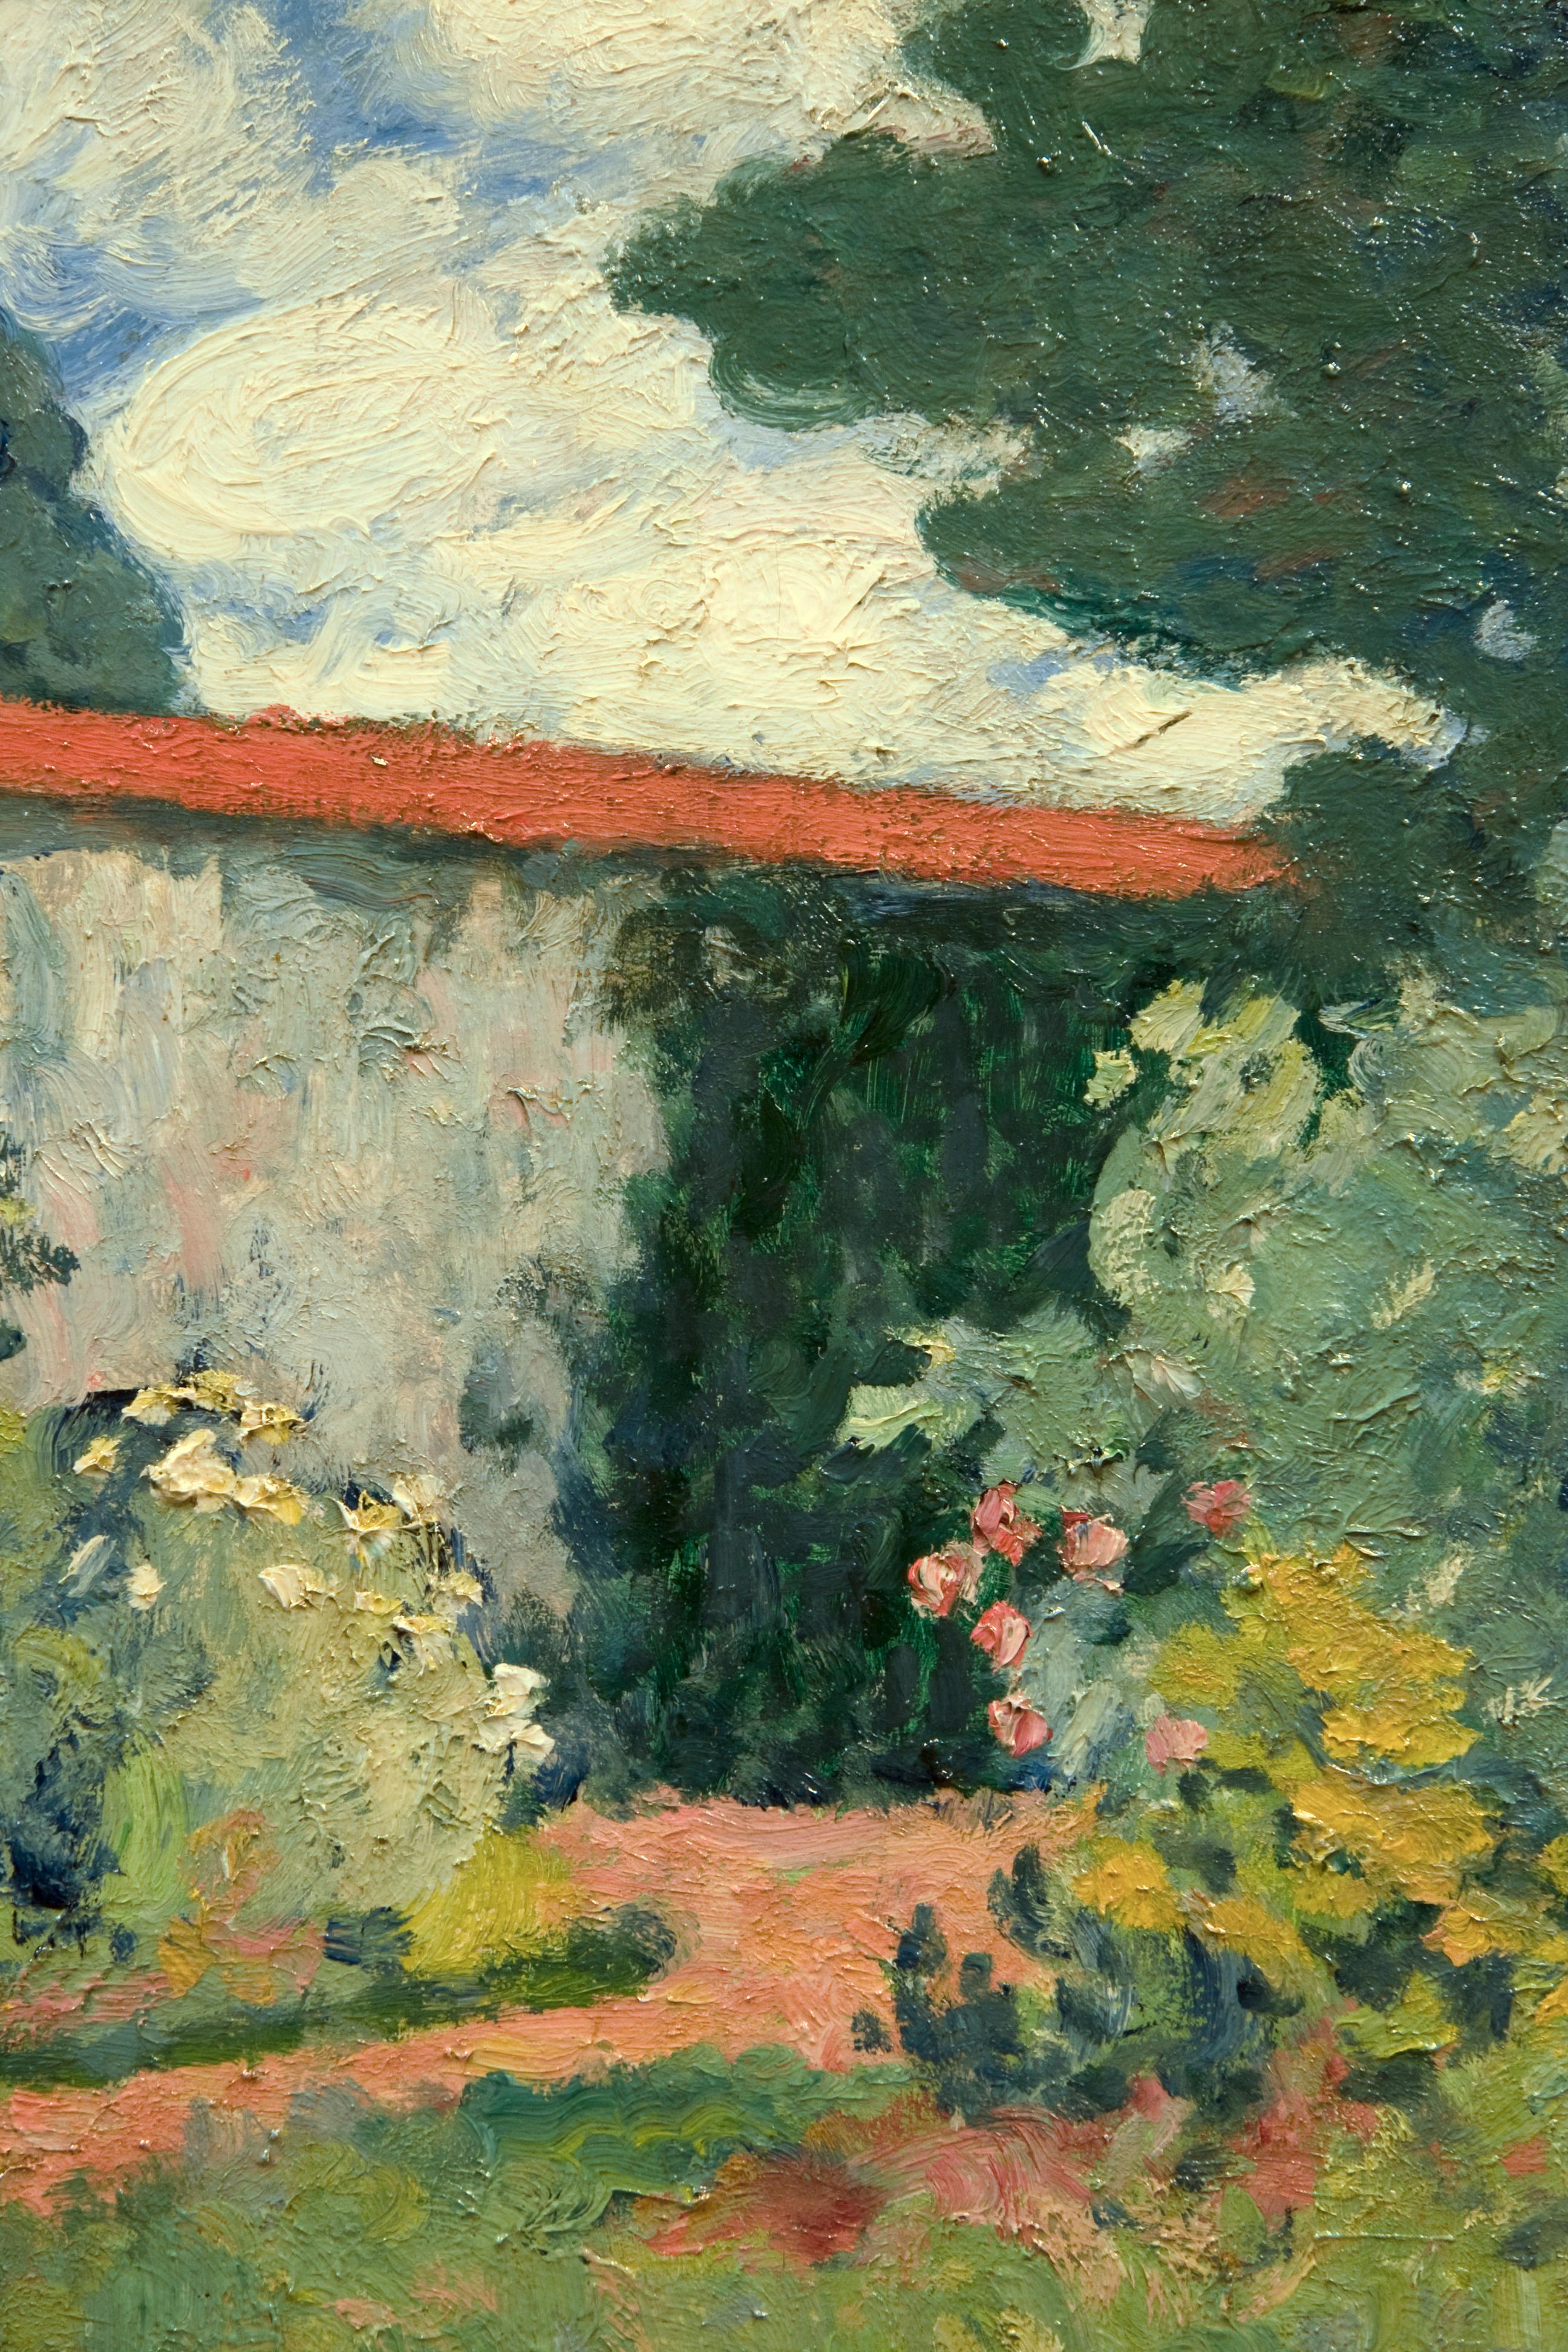 Femme lisant dans un jardin - Post-Impressionist Painting by Georges D'Espagnat